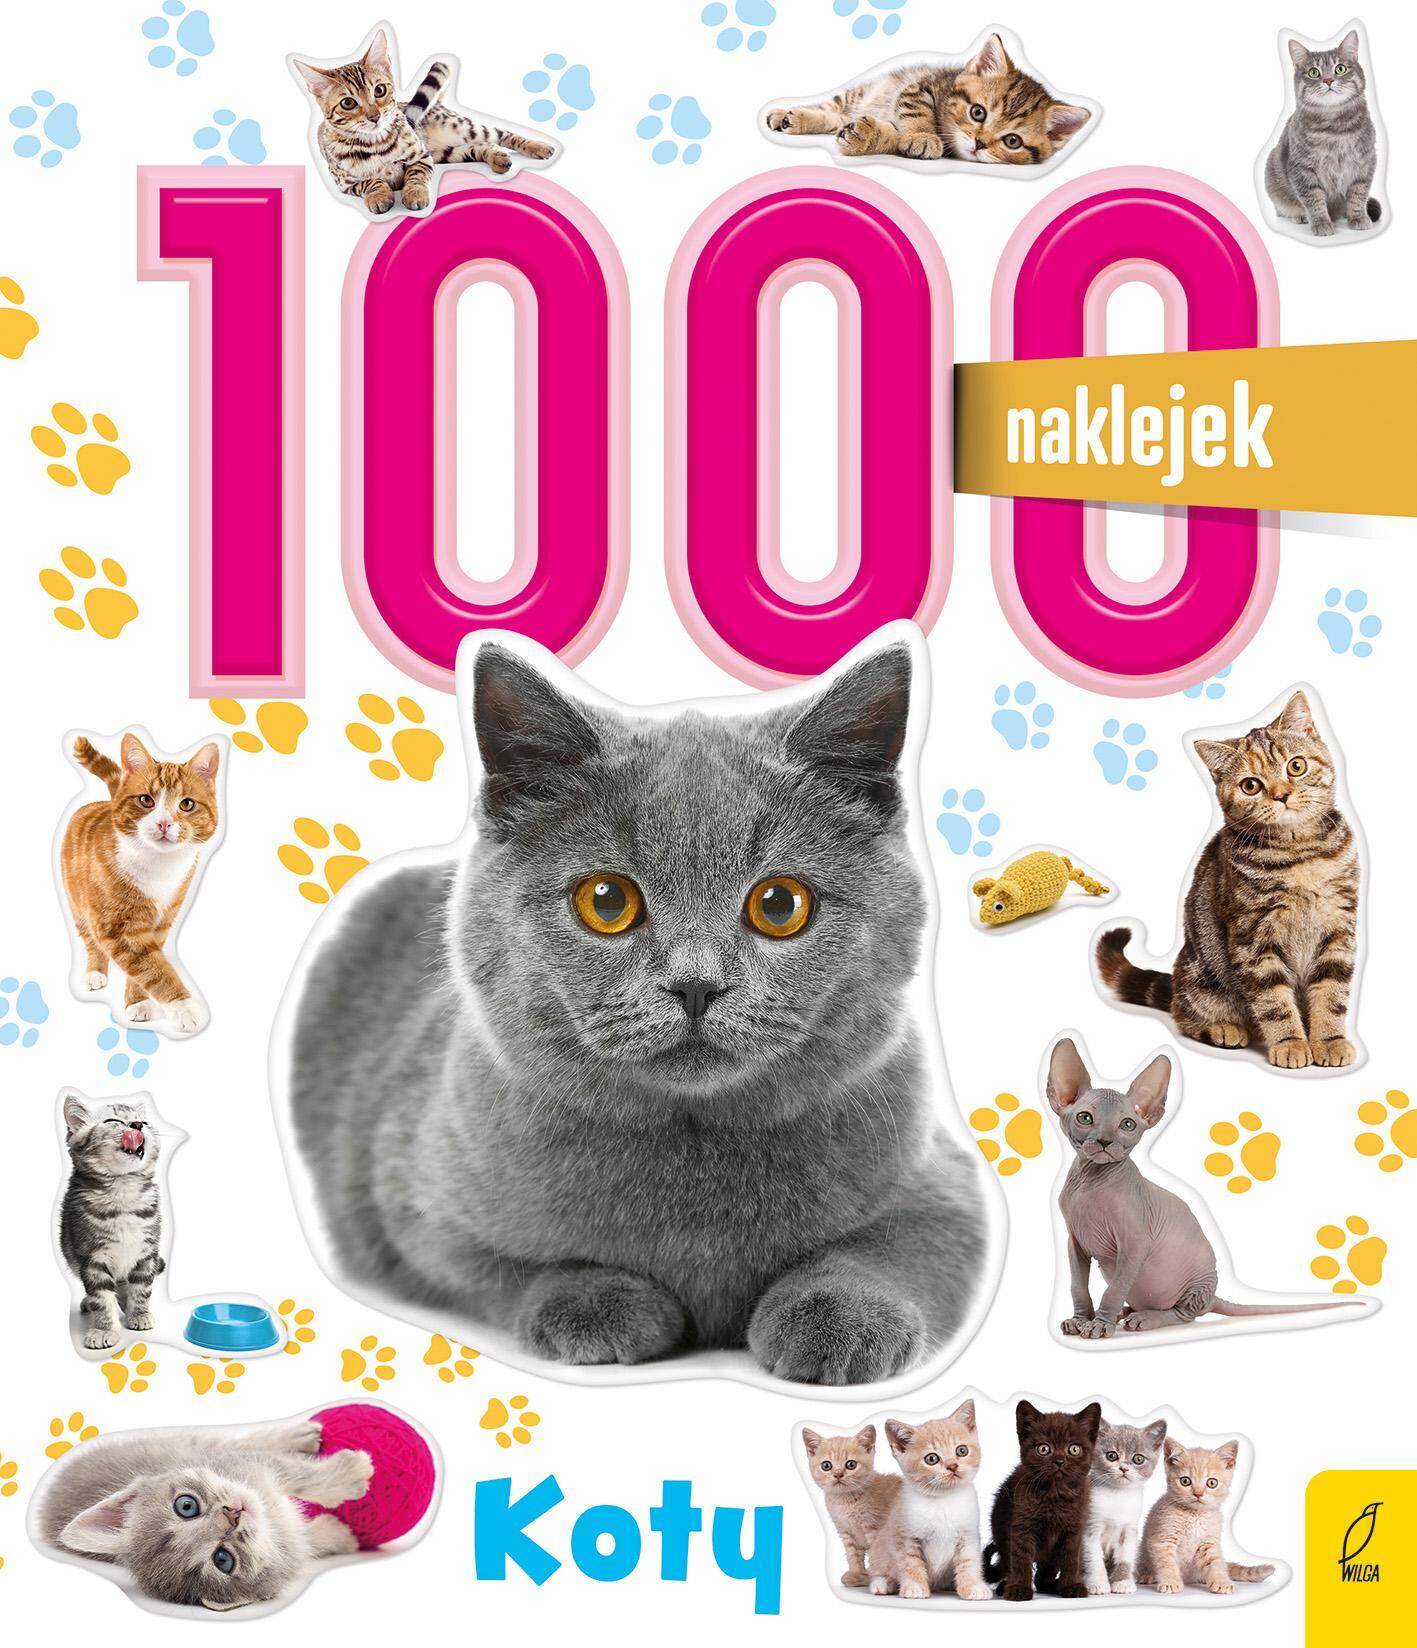 Koty. 1000 naklejek